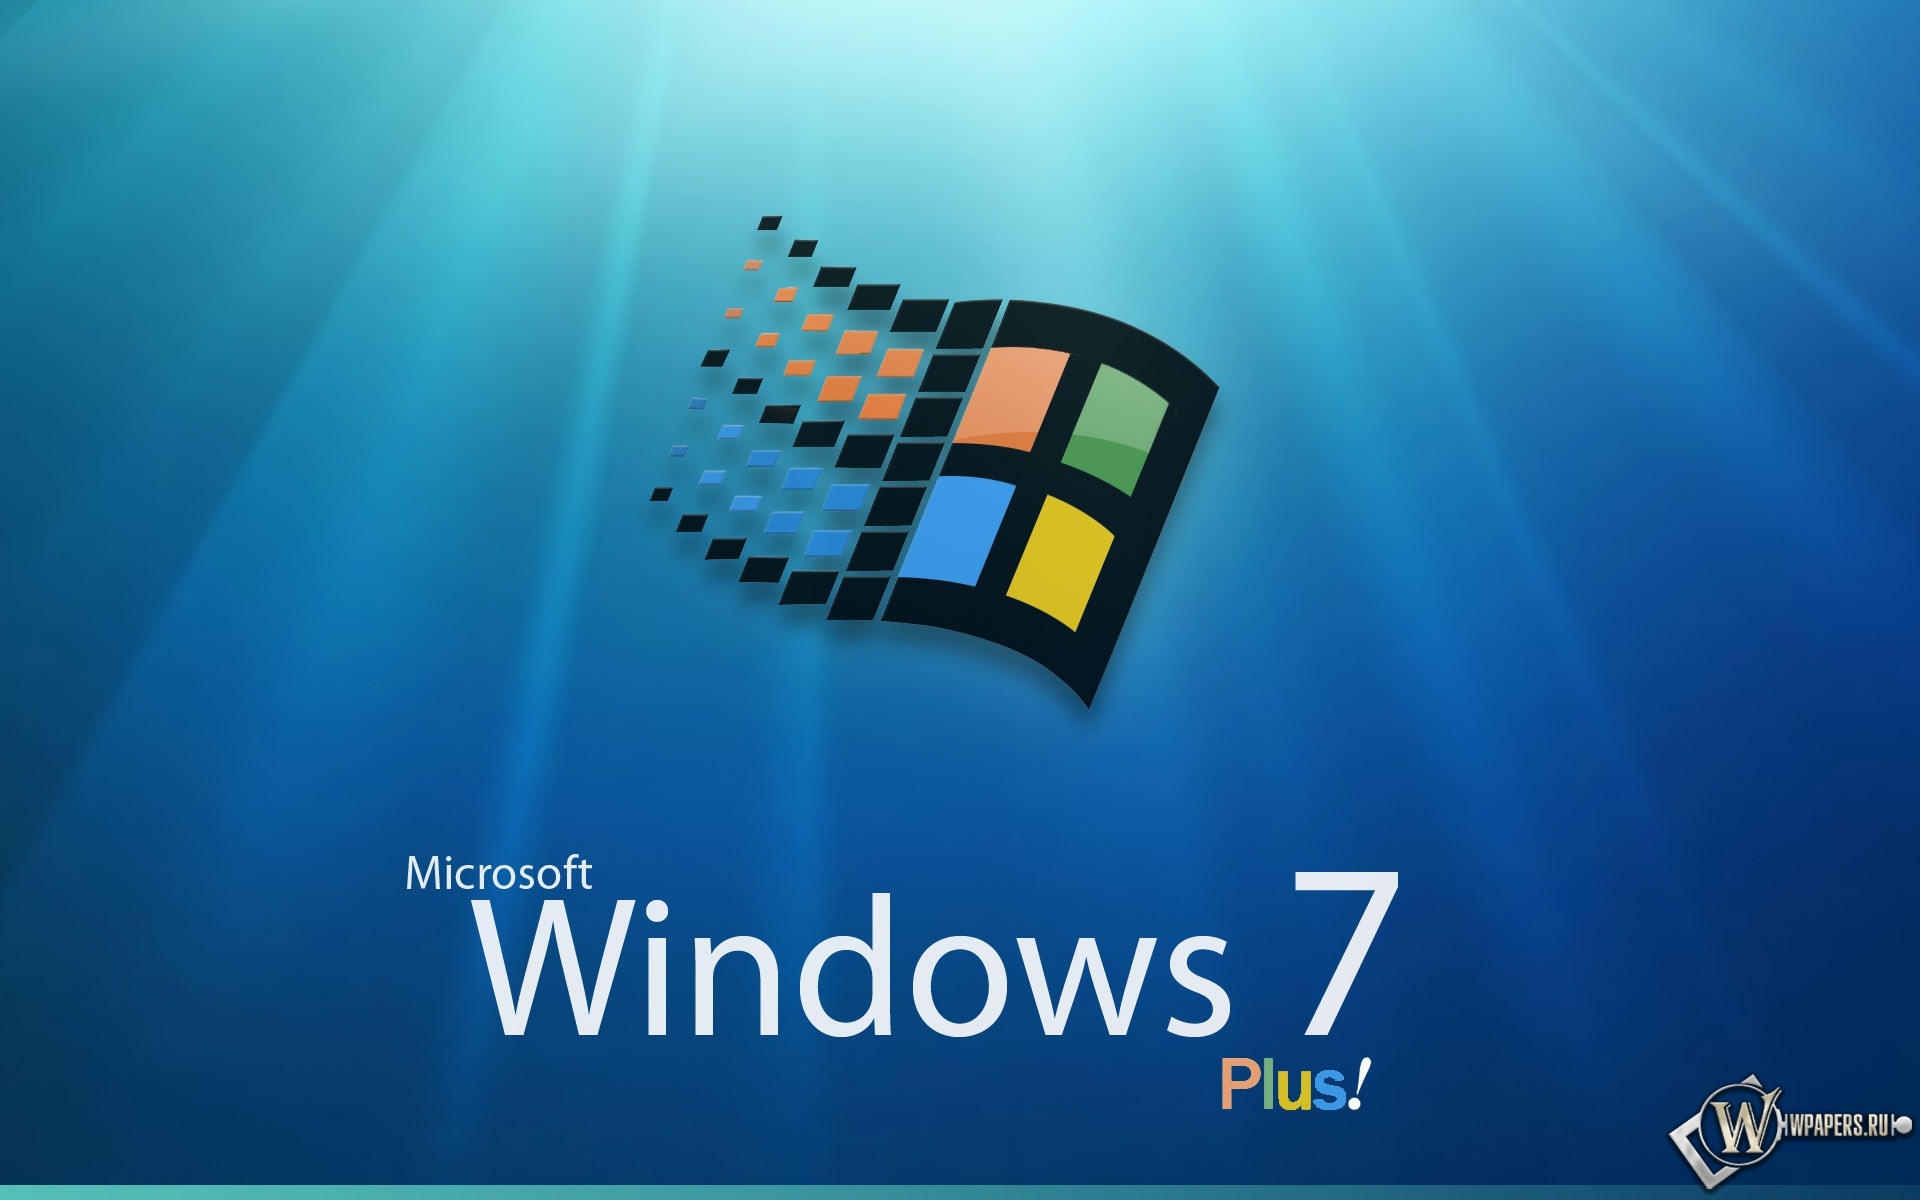 Windows 7 1920x1200